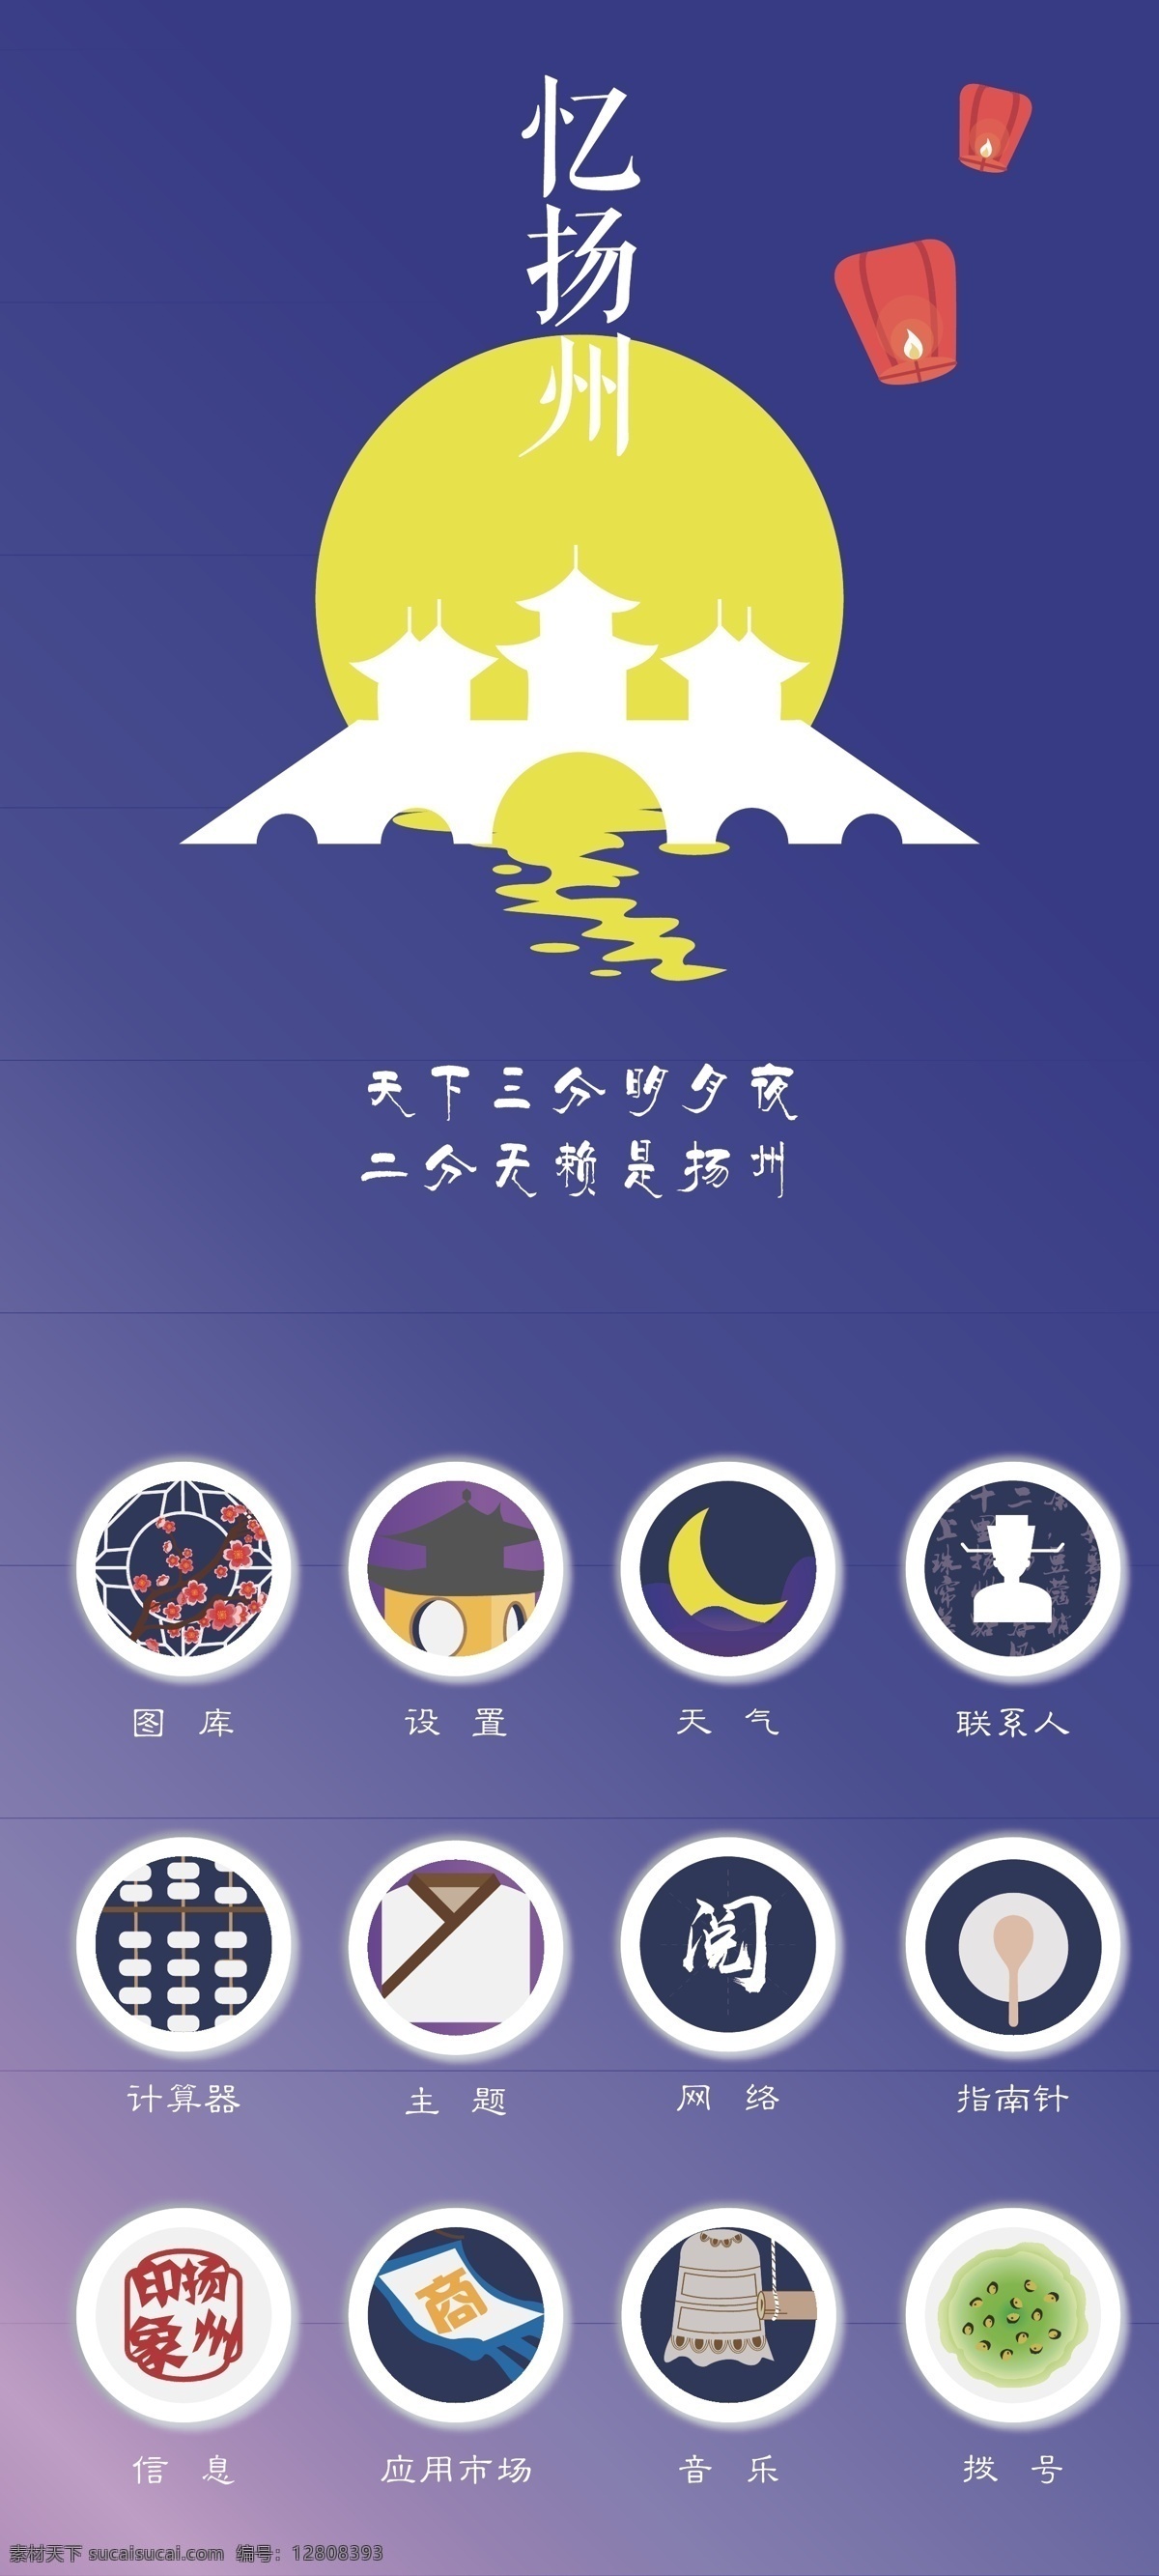 忆 扬州 明月 夜 手机 图标 古风 卡通 月亮 中国风图标 矢量 五亭桥 孔明灯 icon